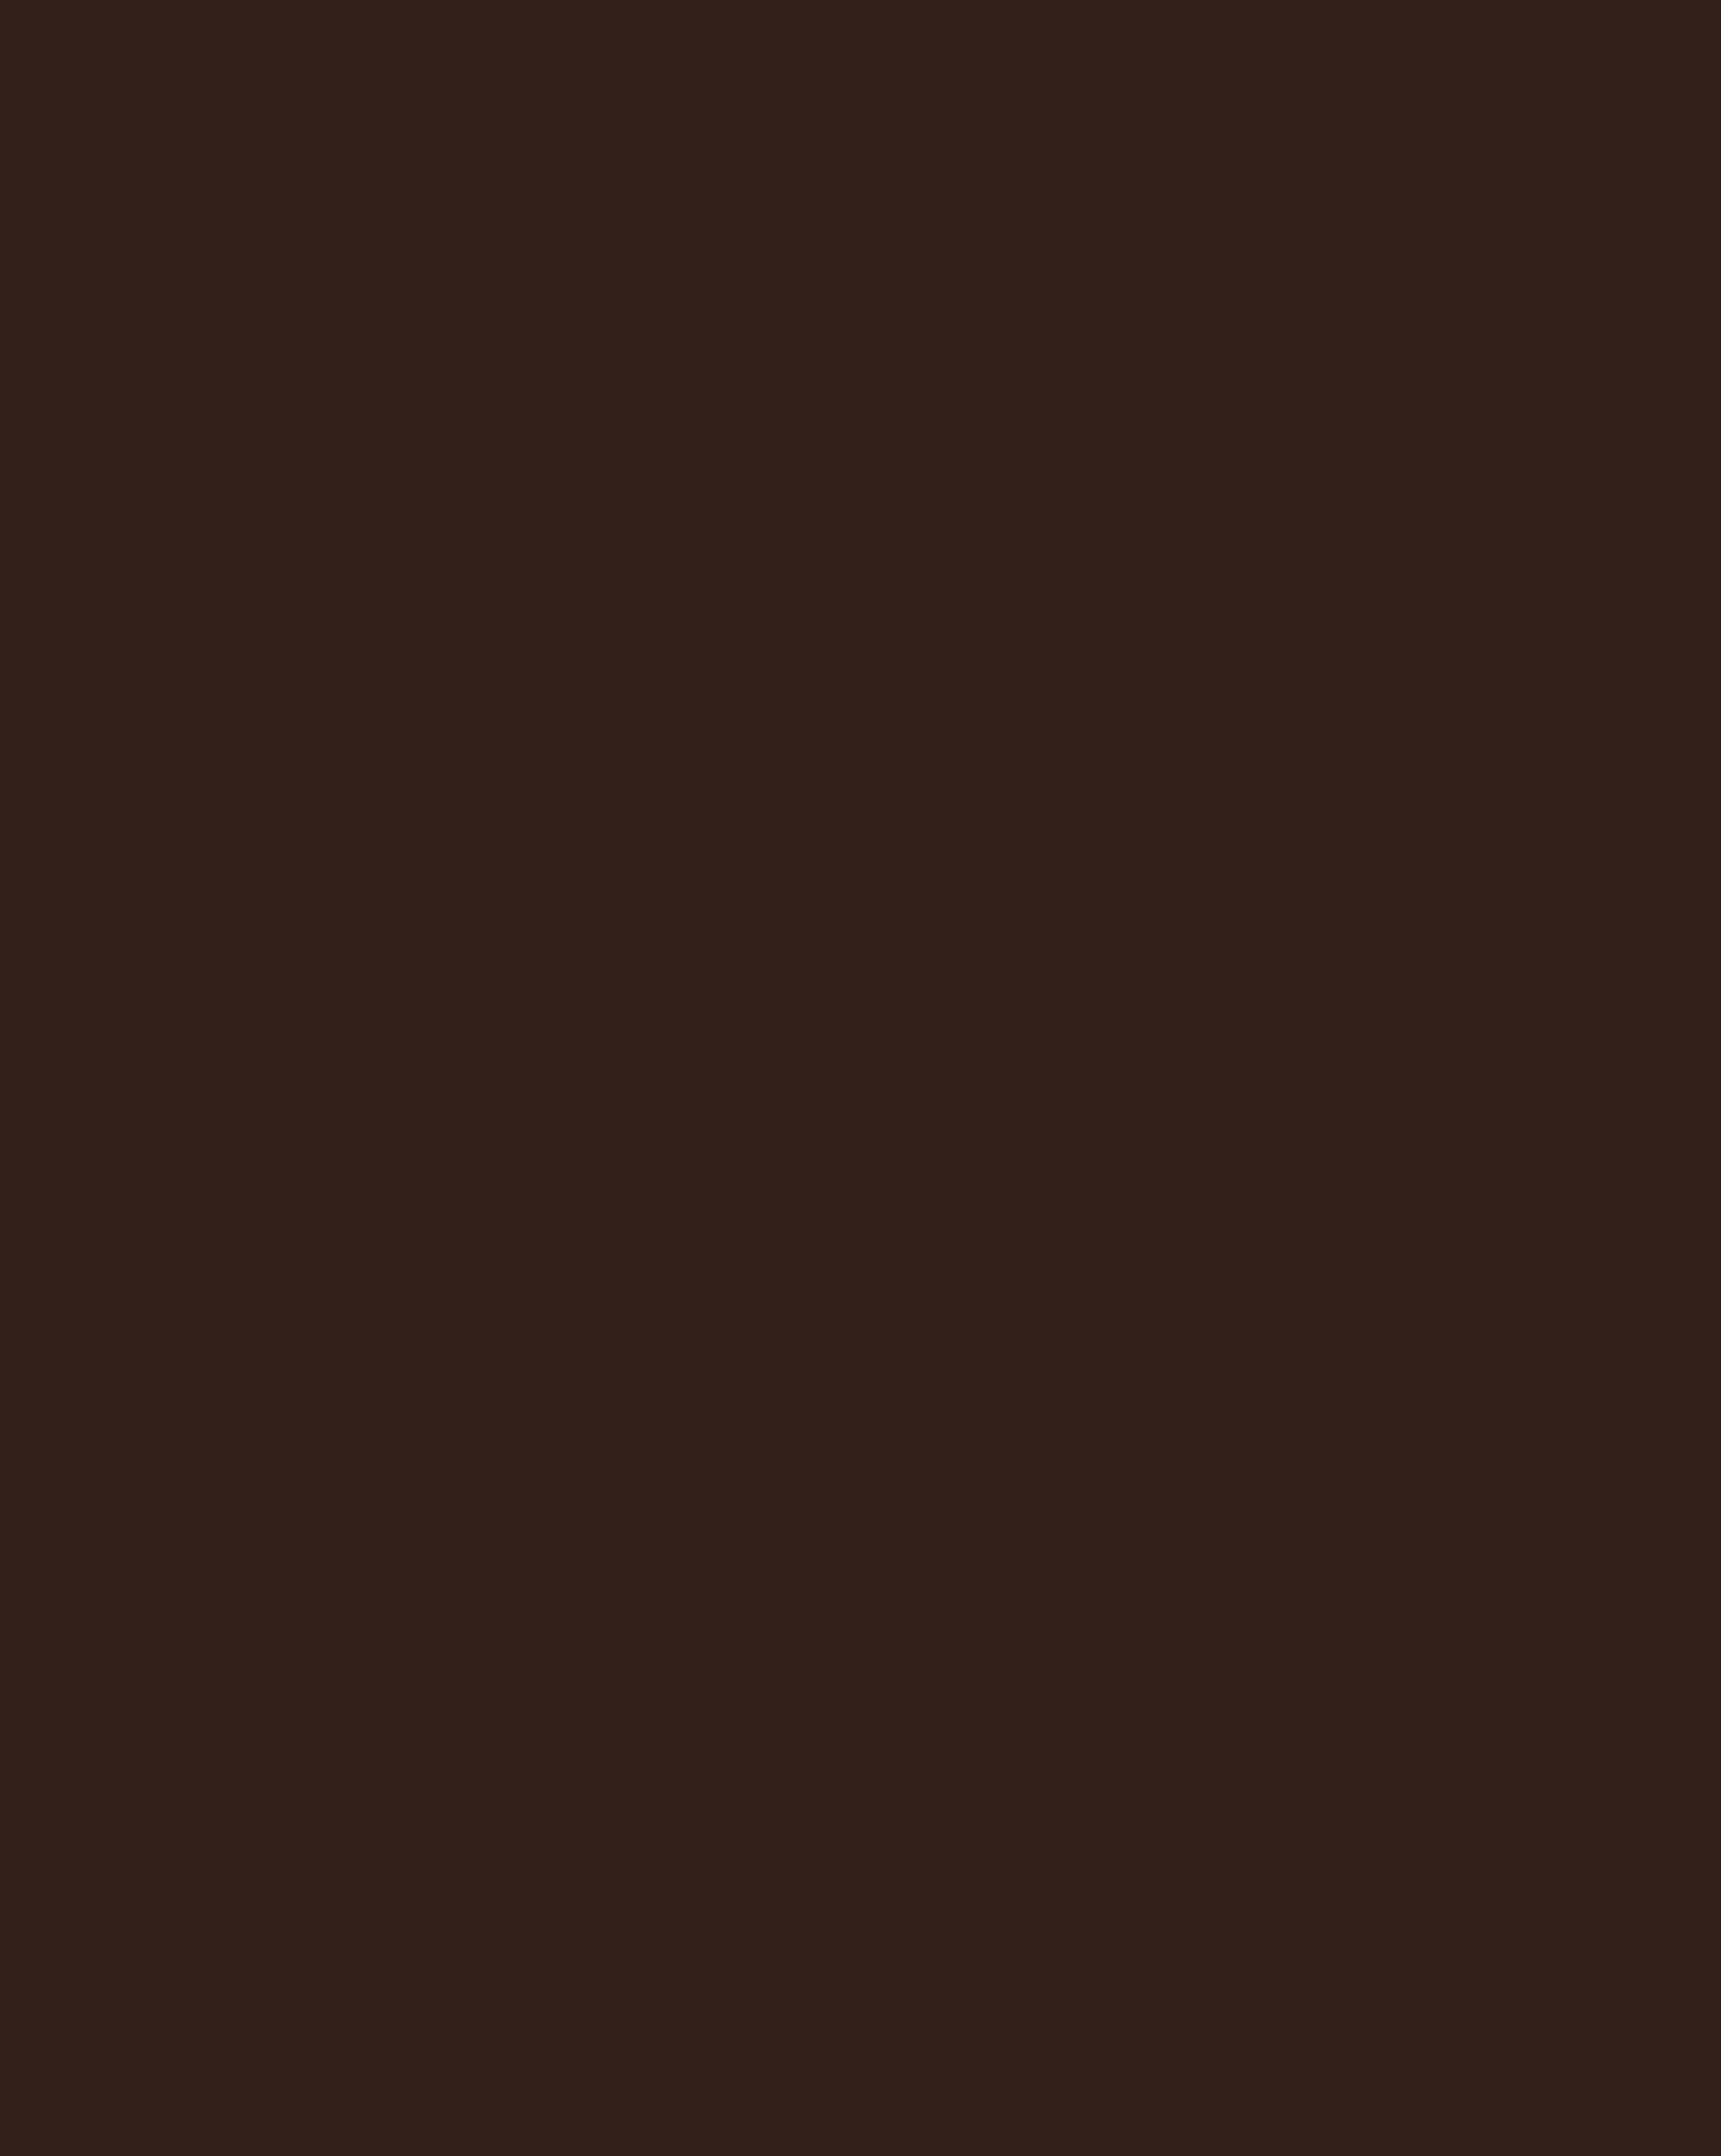 Василий Перов. Портрет писателя Ивана Тургенева. 1872. Государственный Русский музей, Санкт-Петербург